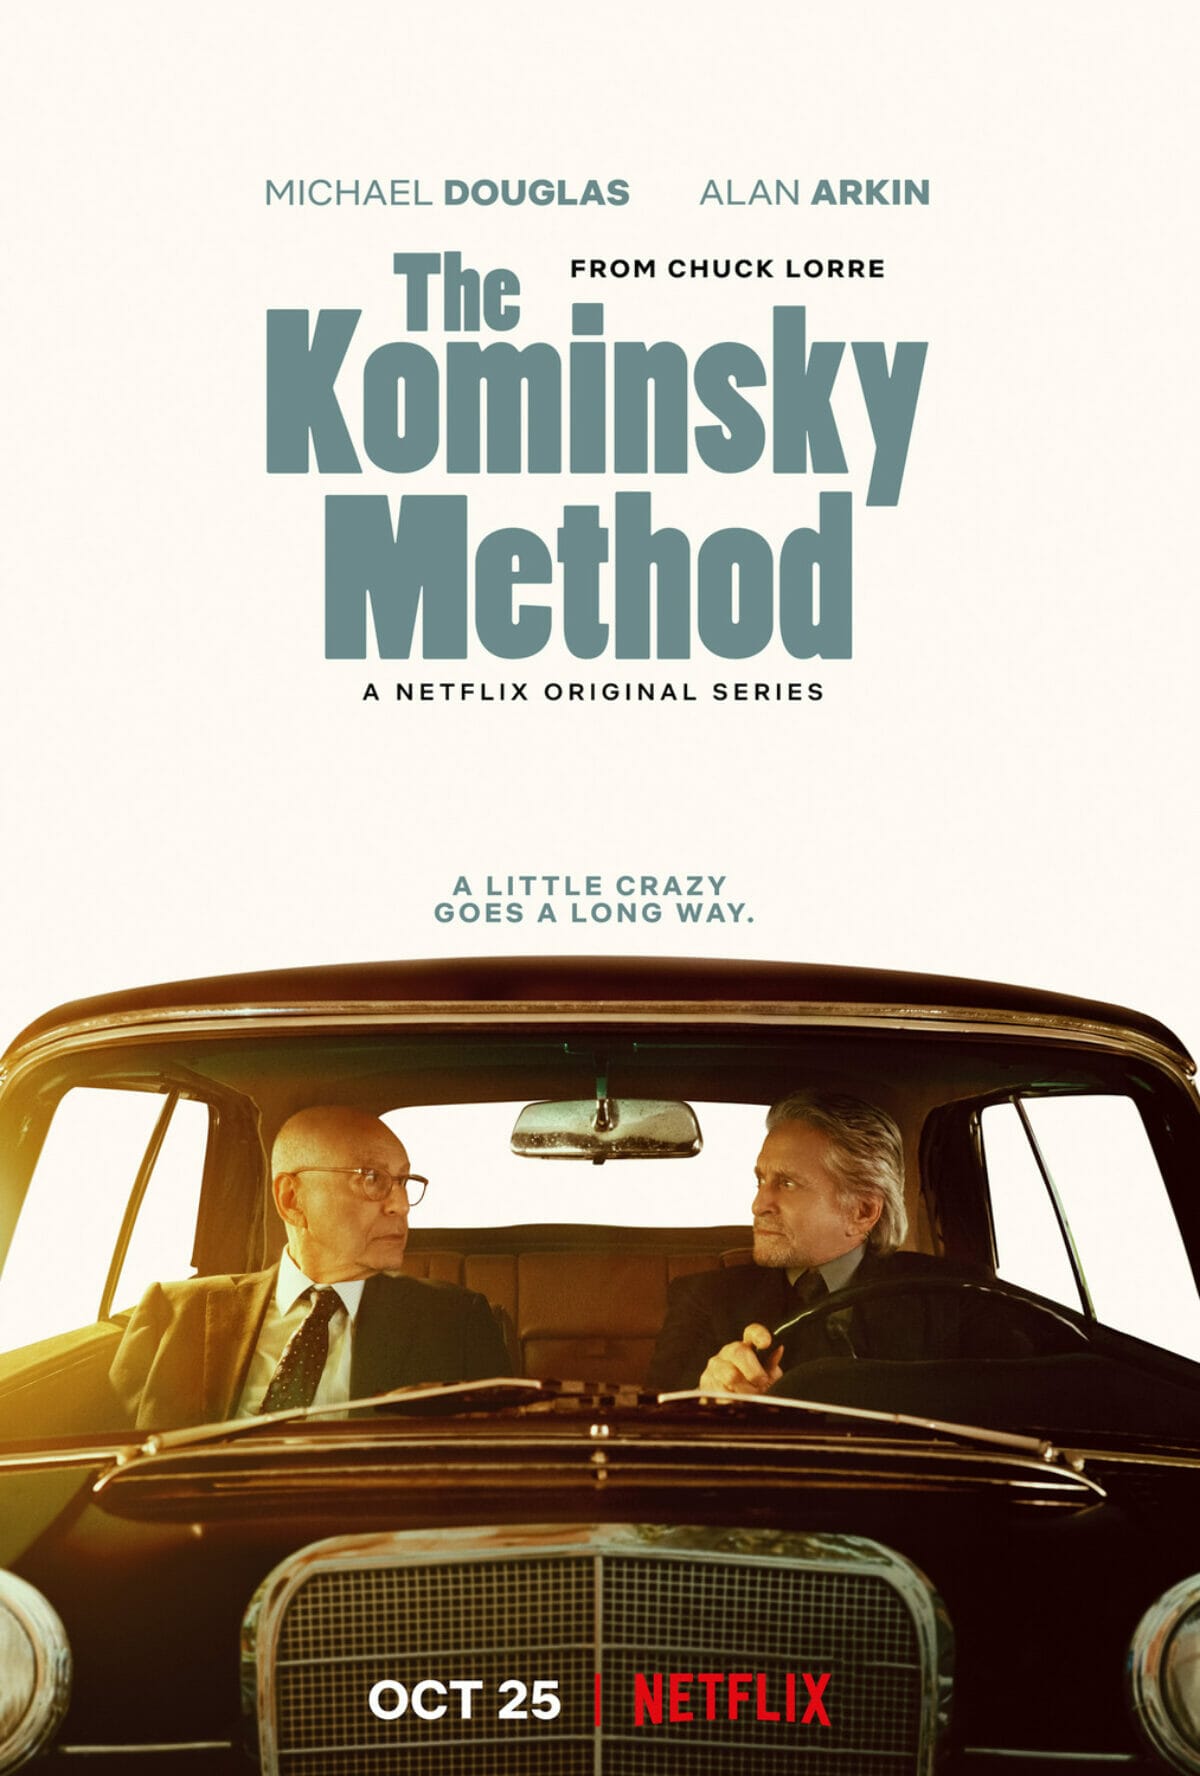 La-méthode-kominsky-poster